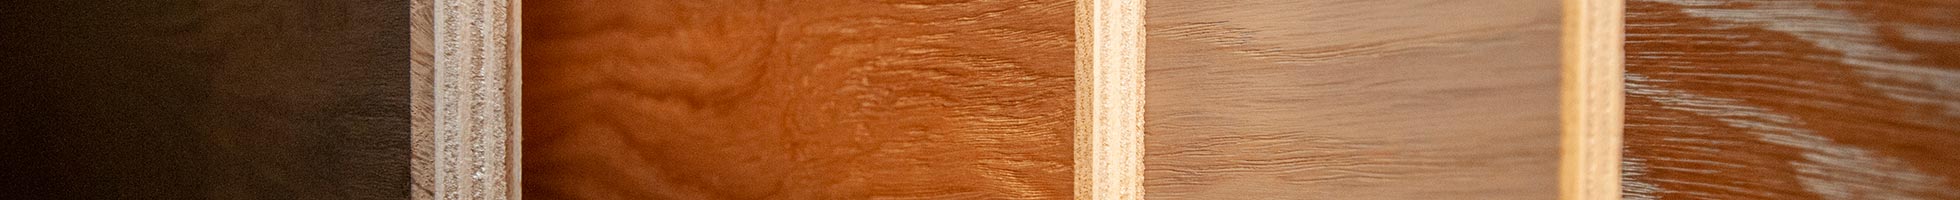 Prefinished Hardwood Flooring, Best Cleaner For Prefinished Hardwood Floors